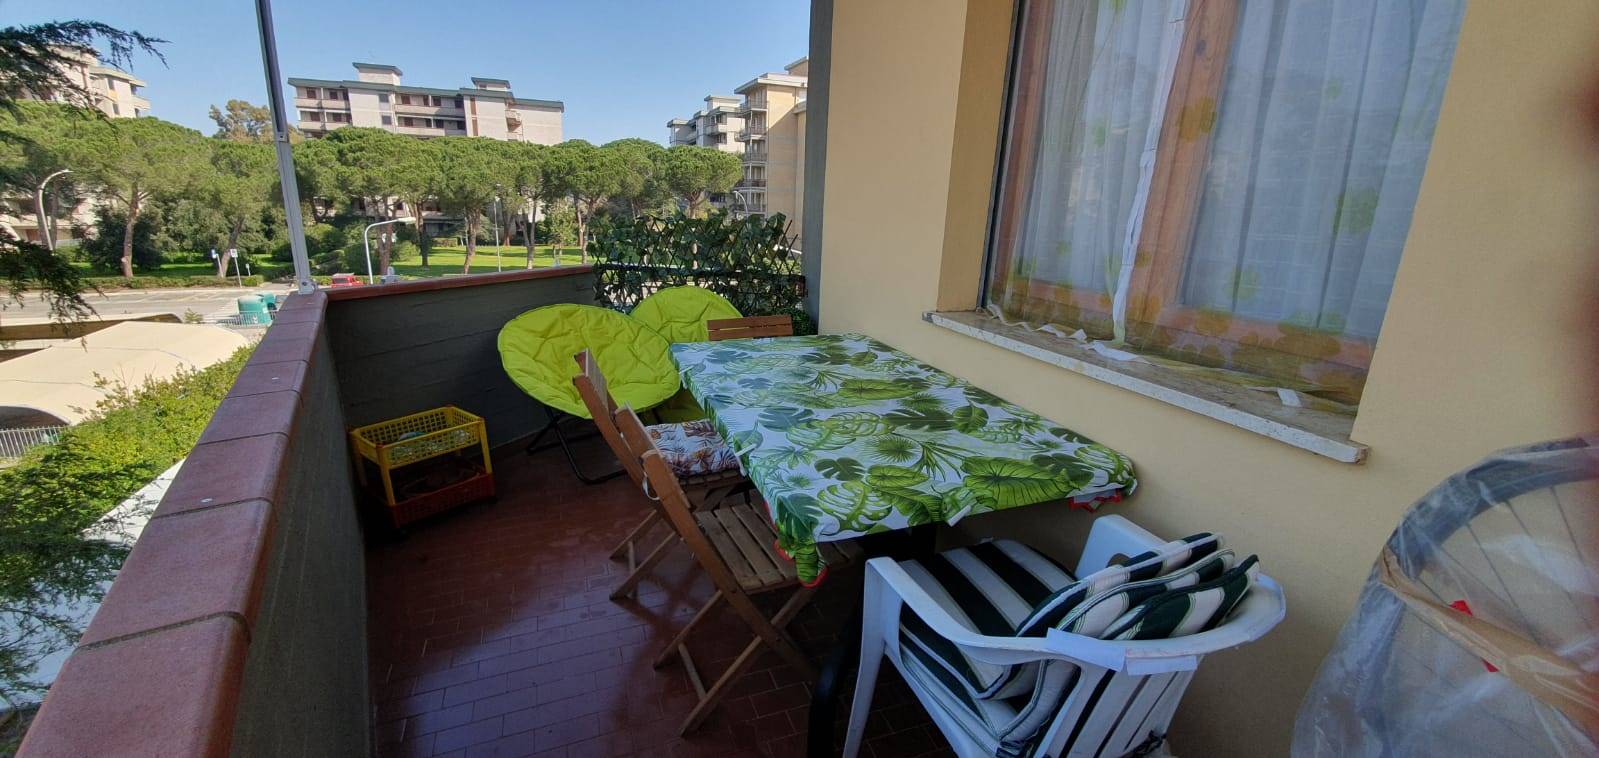 Appartamento in vendita a Follonica, 3 locali, zona Località: SALCIAINA, prezzo € 155.000 | PortaleAgenzieImmobiliari.it